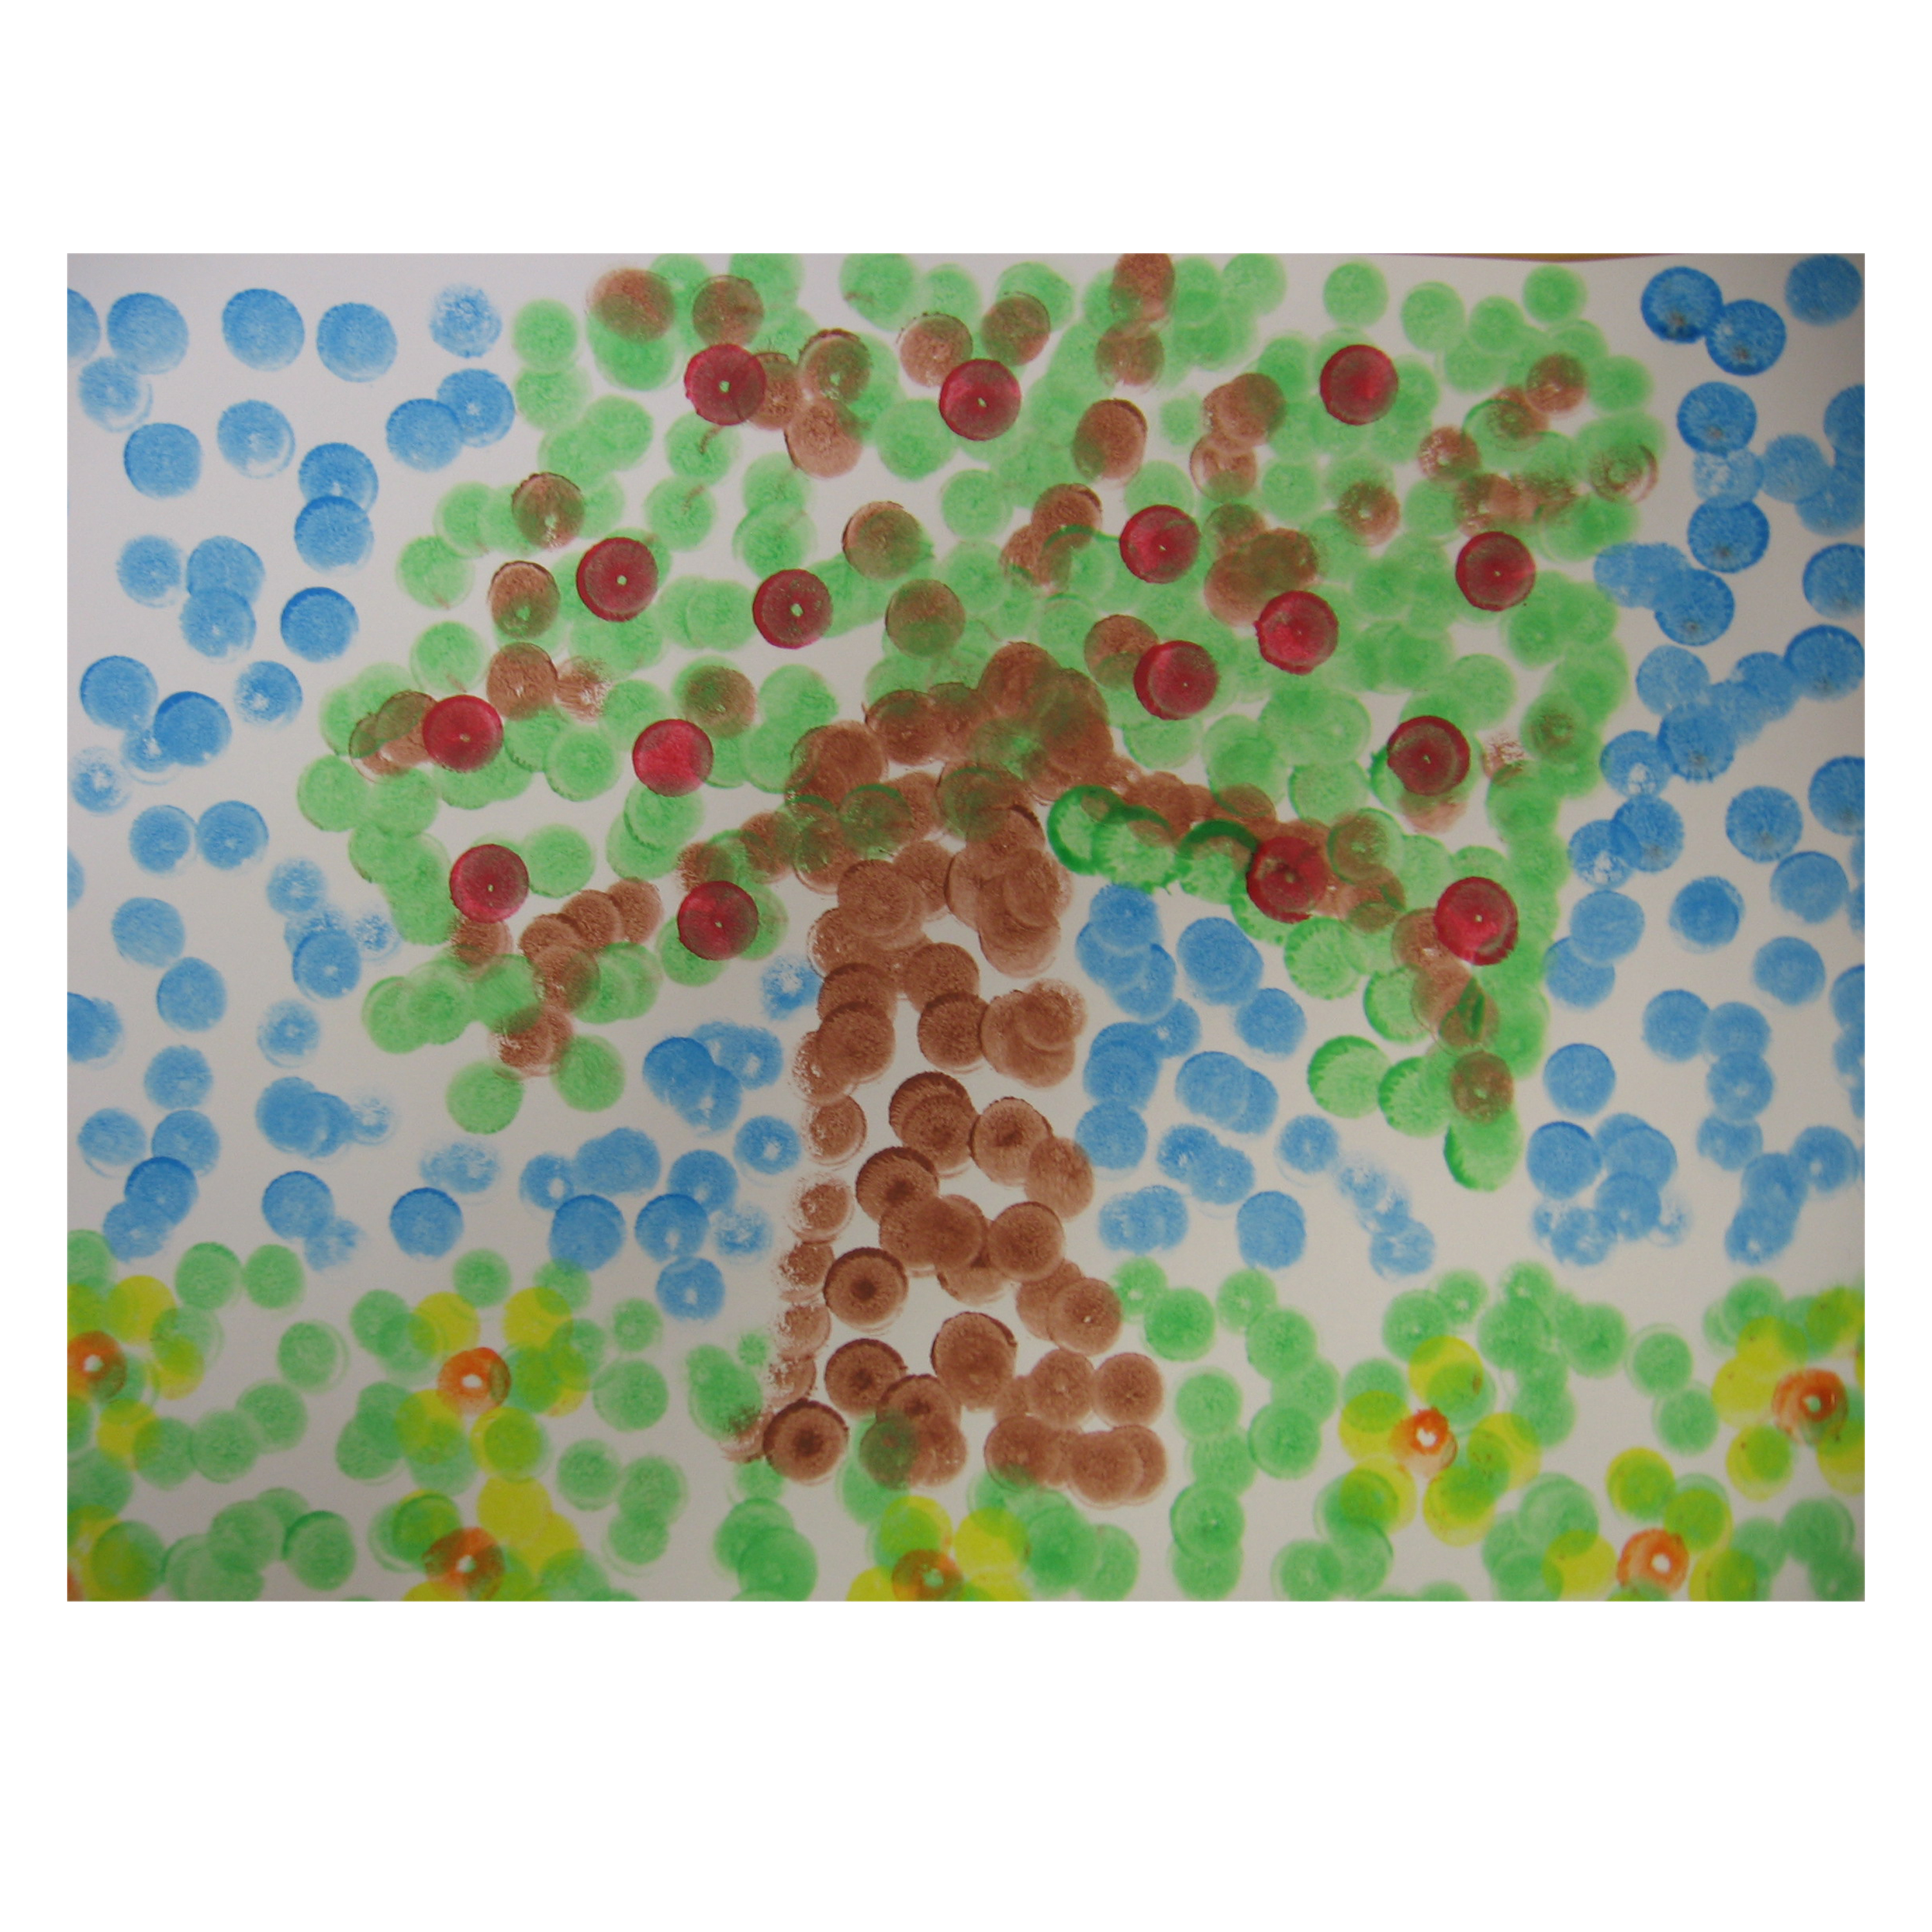 Spongy Plakatfarbe im 6er-Set, farbig sortiert, je 70 ml